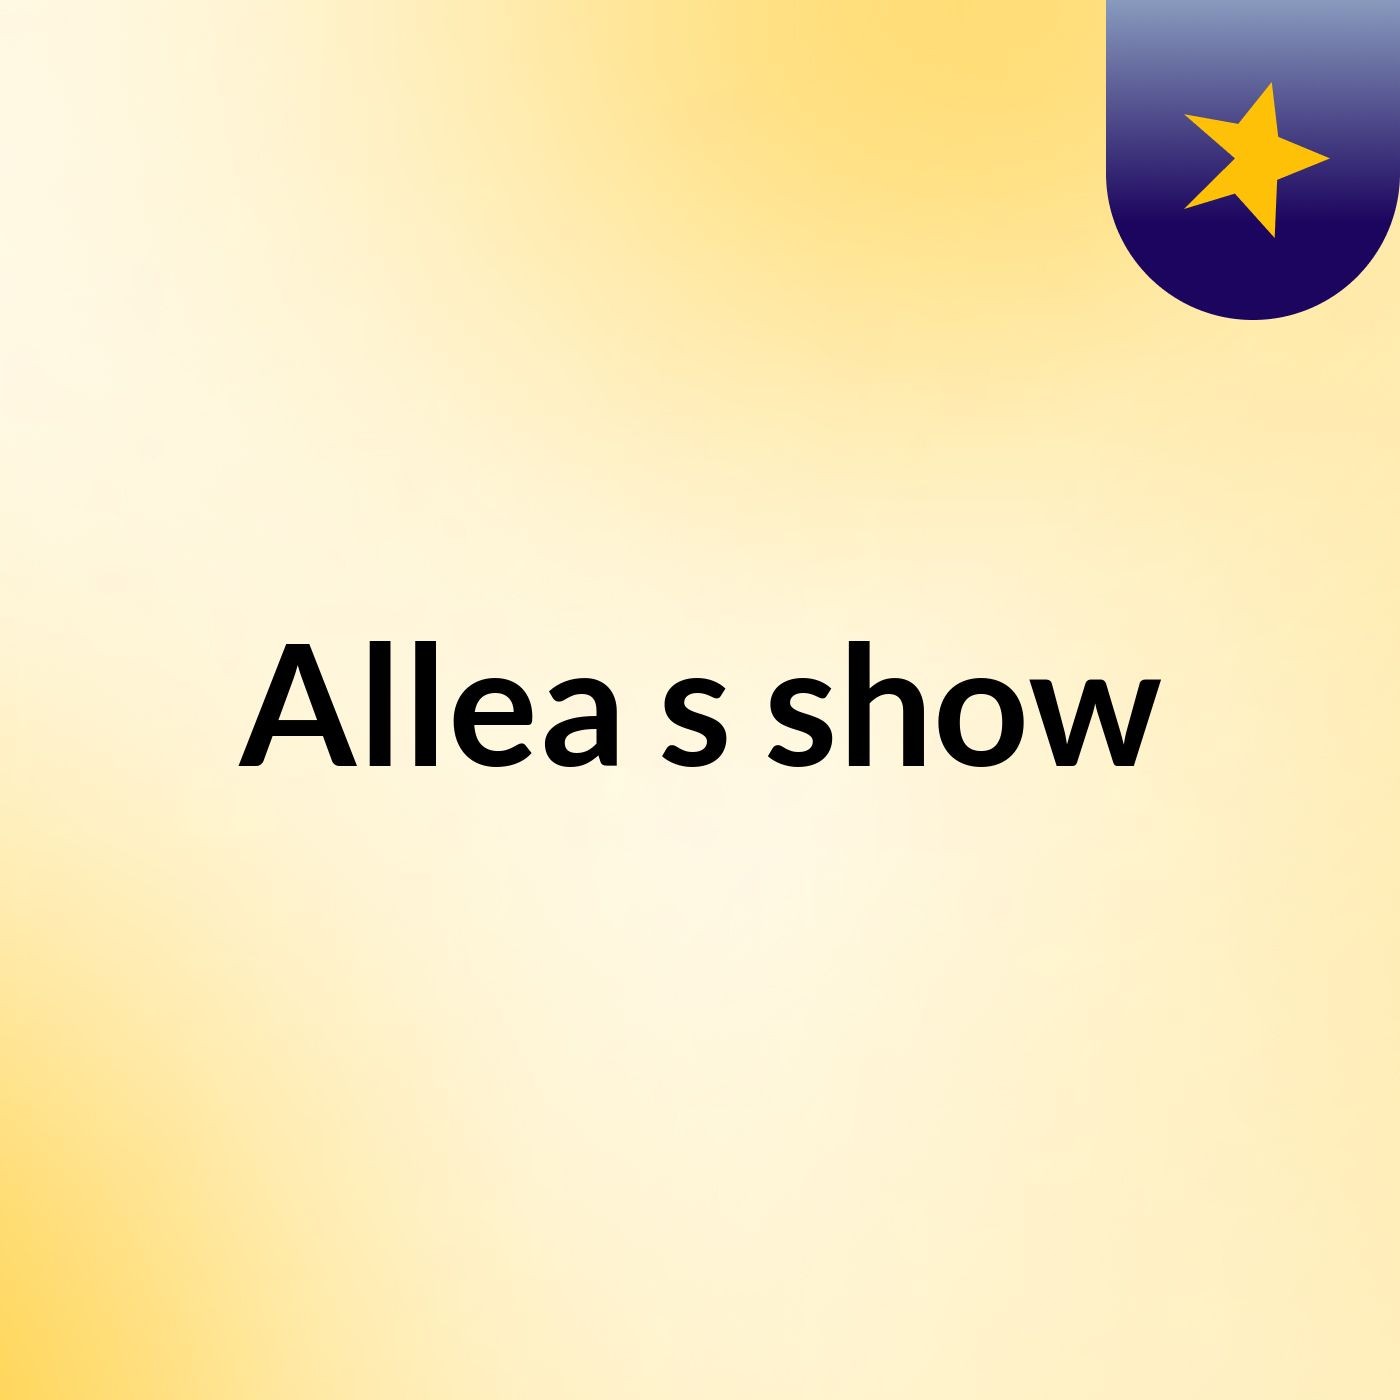 Episode 7 - Allea's show